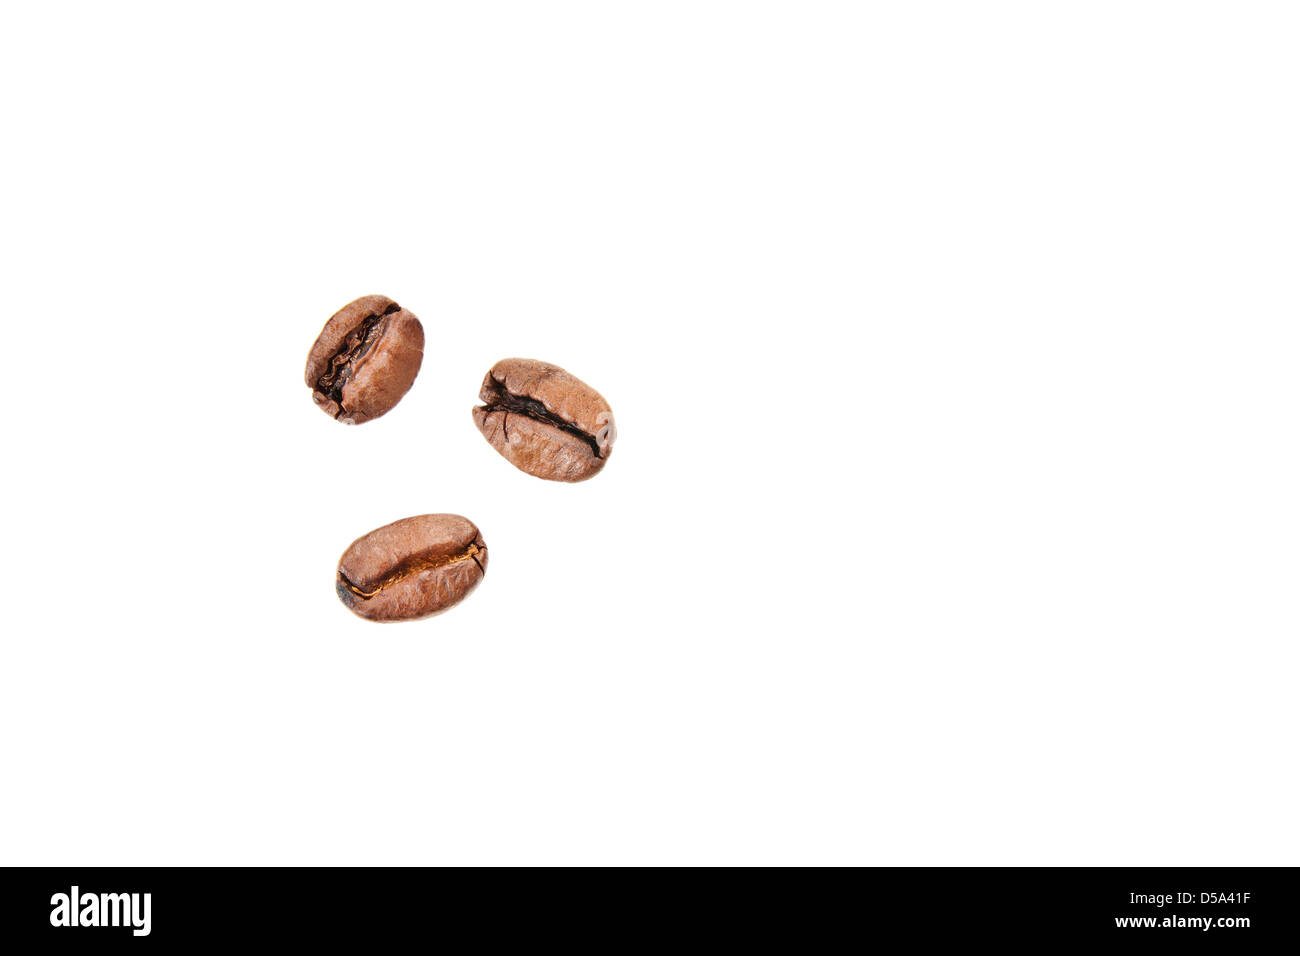 Drei kleine Körner Kaffee auf weißem Hintergrund - Draufsicht Stockfoto